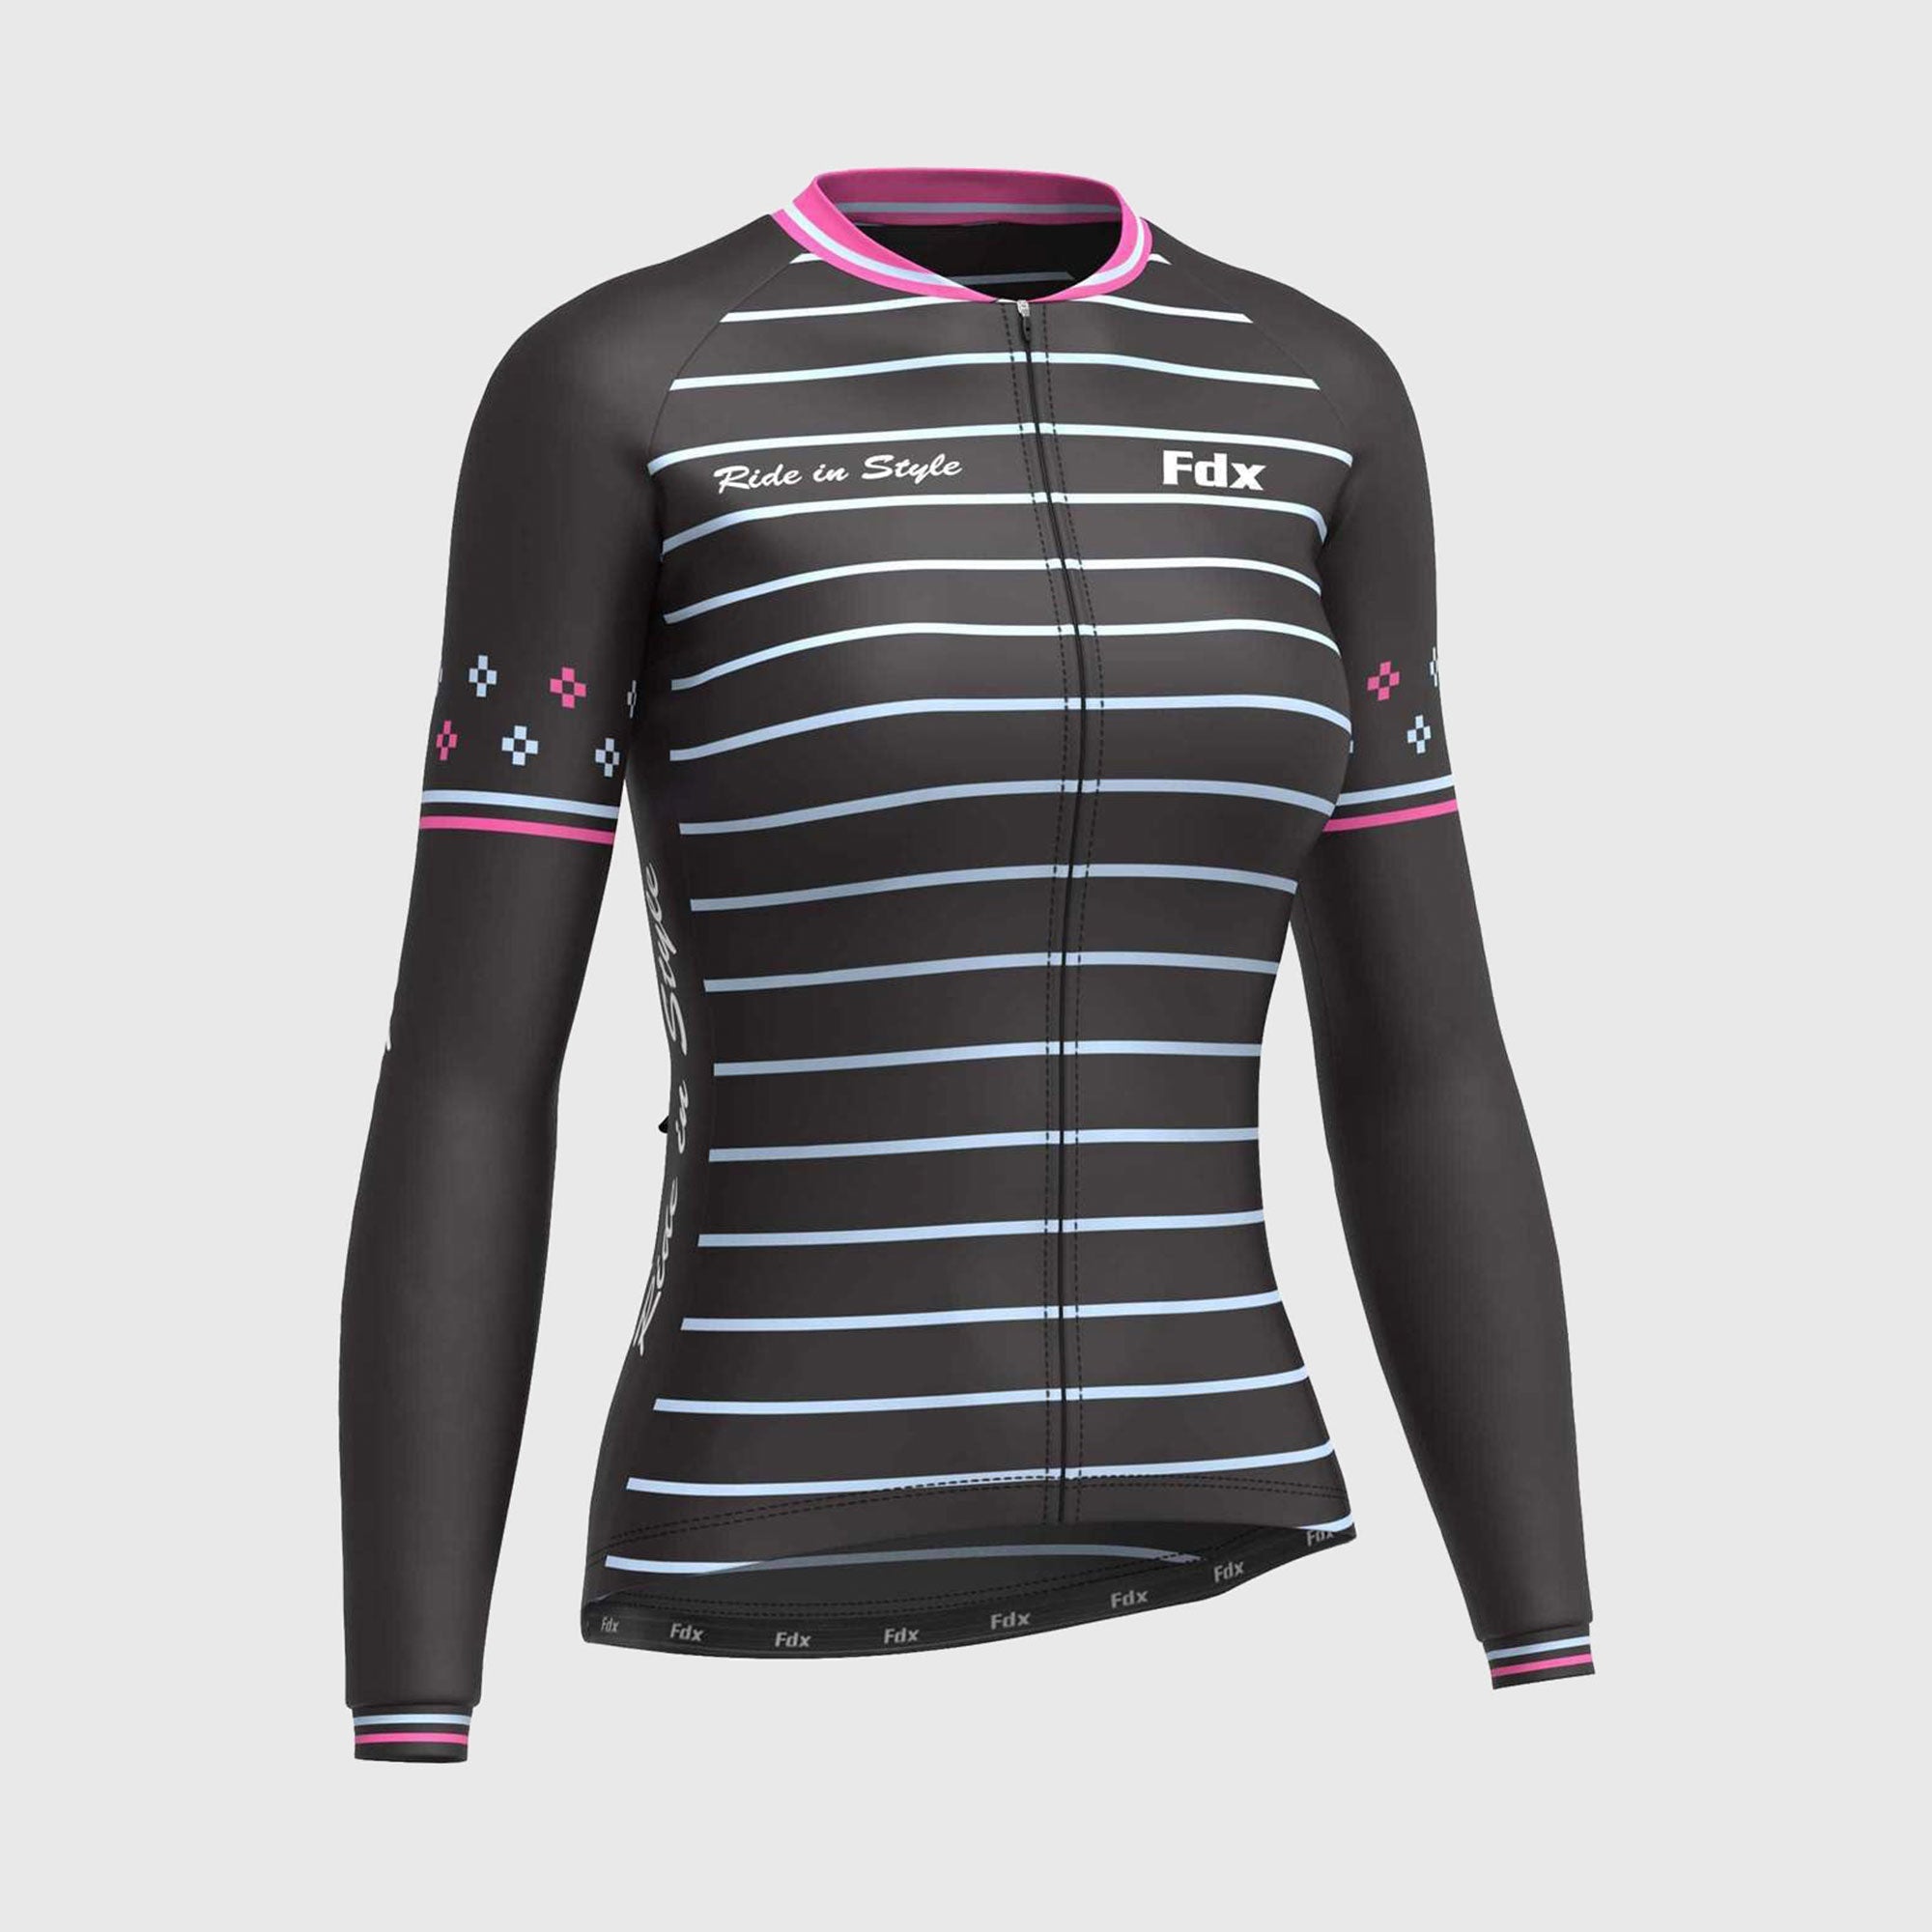 Fdx Ripple Pink Women's Fleeced Lined Winter Cycling Jersey